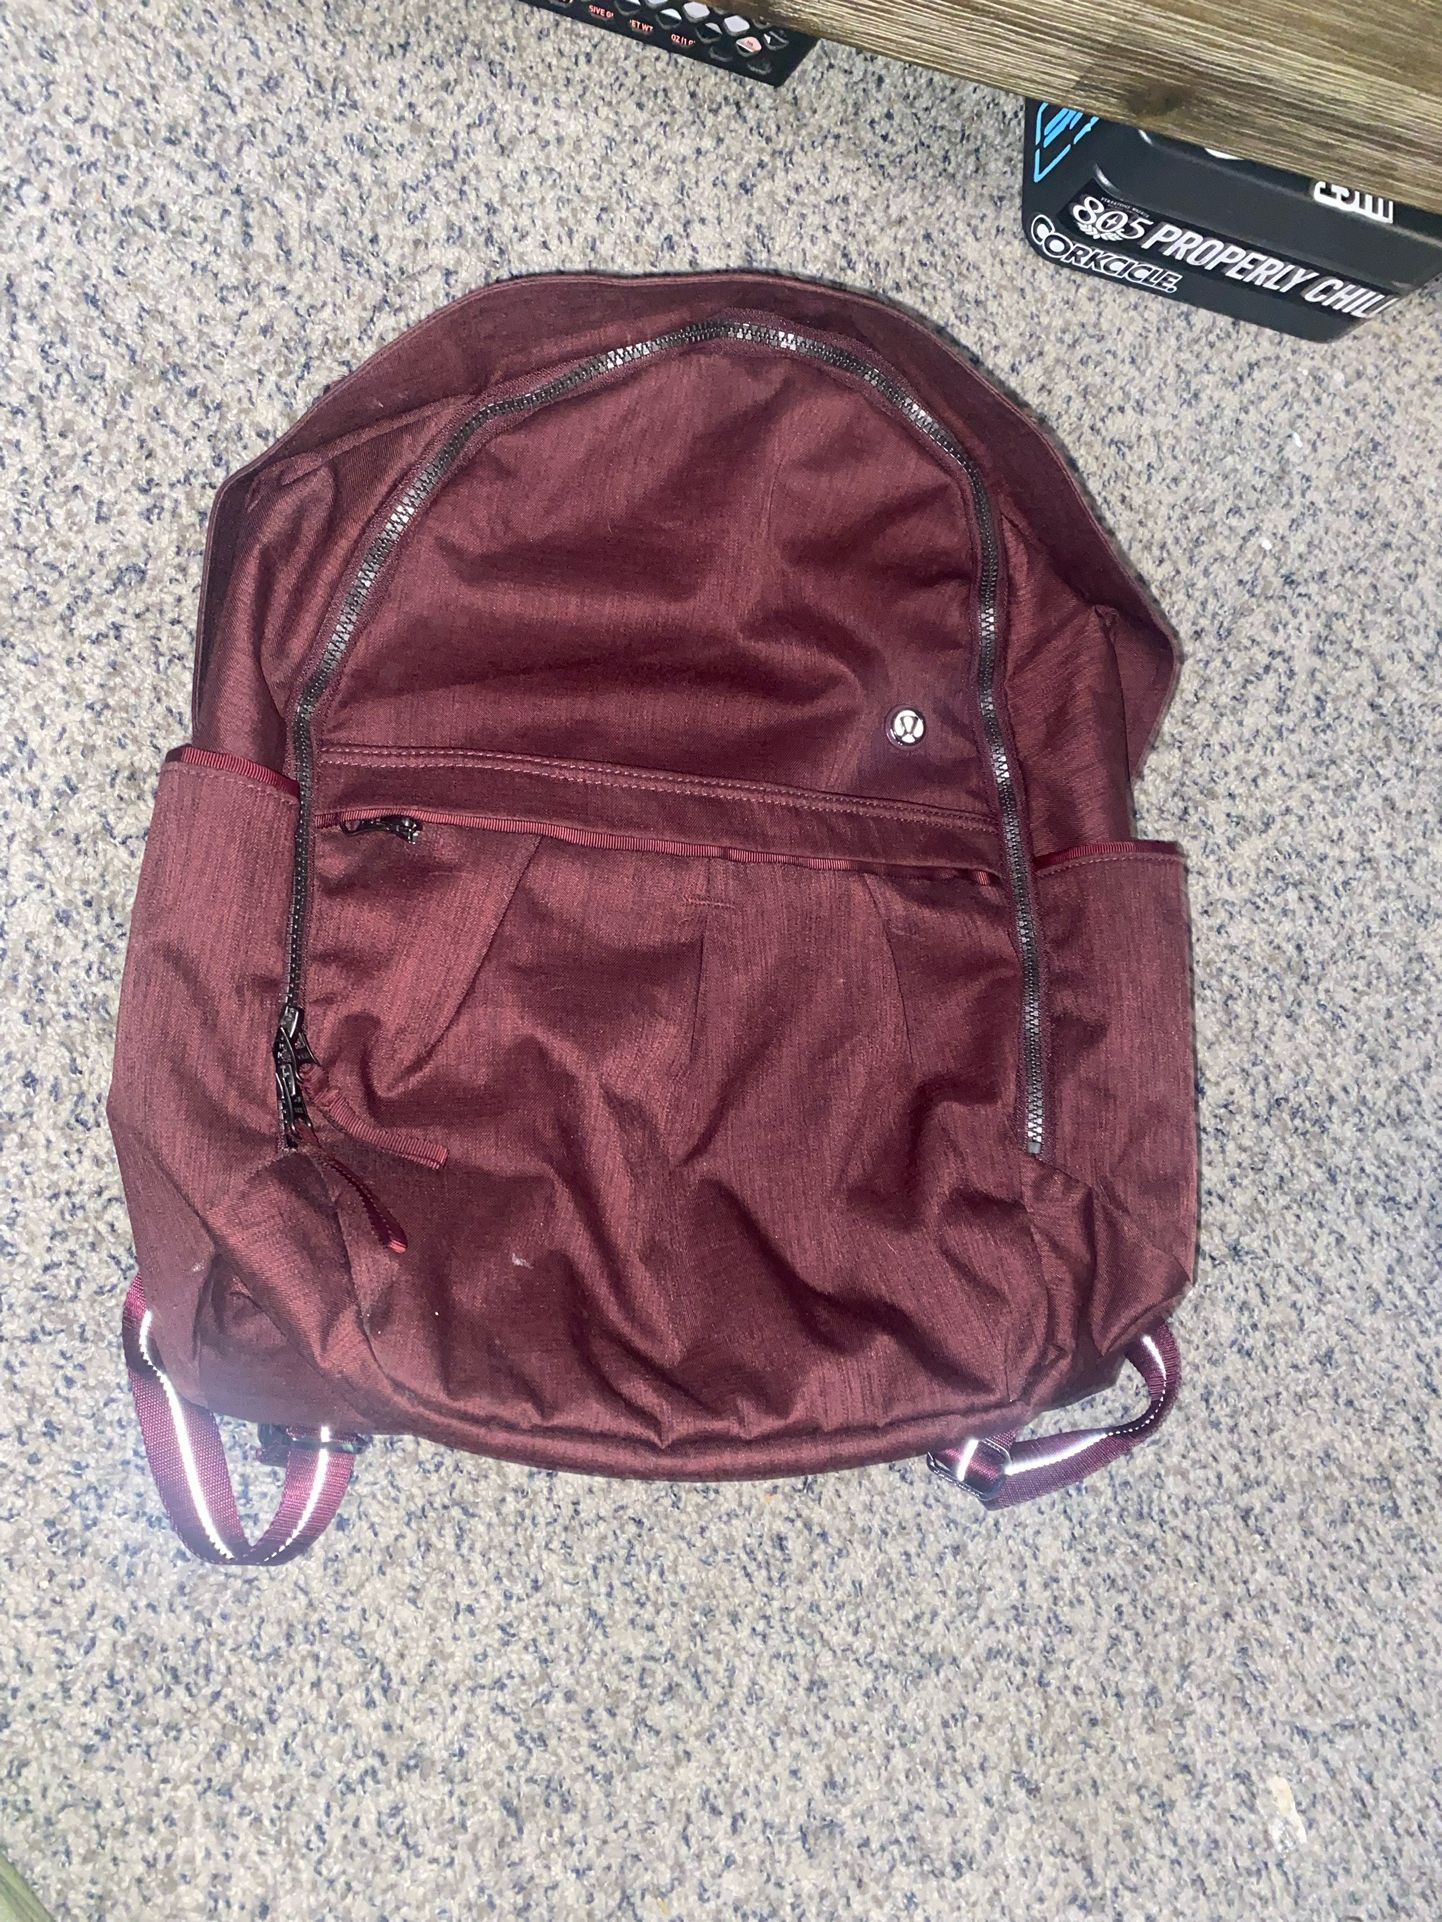 LuLuLemon Athletica Maroon Backpack *NWOT*